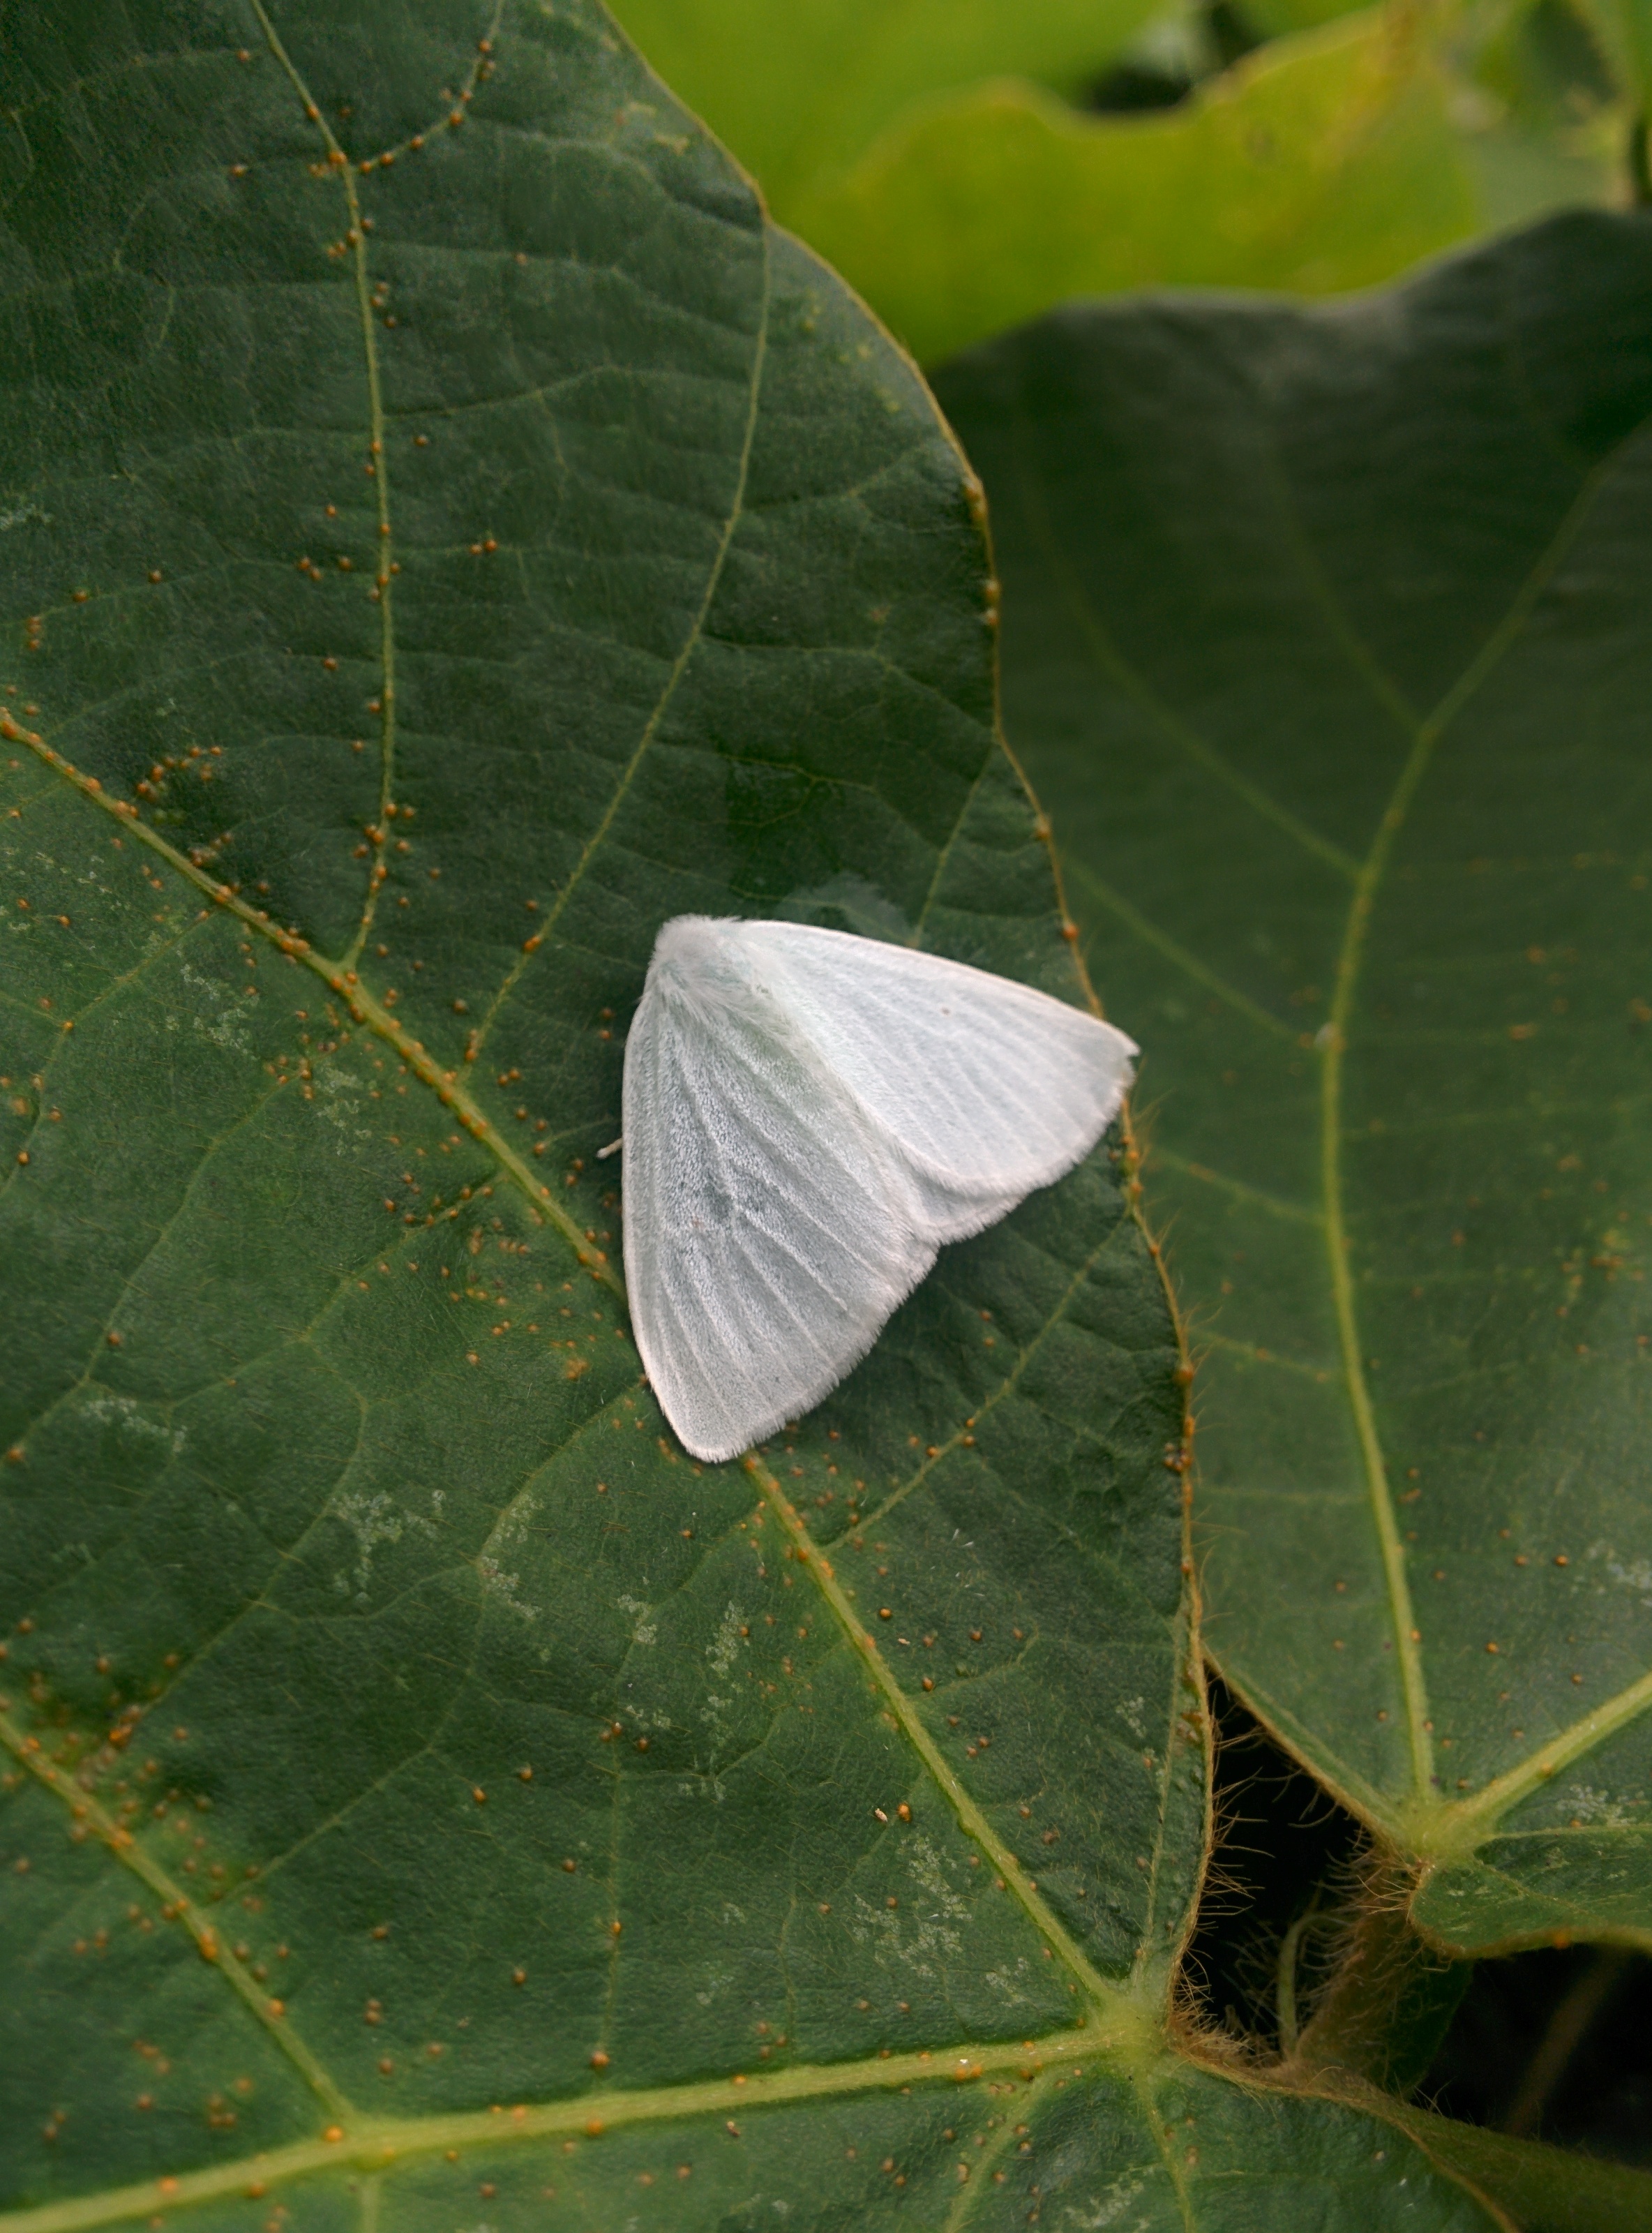 IMG_20150912_100423.jpg 흰색날개매미충 = 하얀색 갈색날개매미충